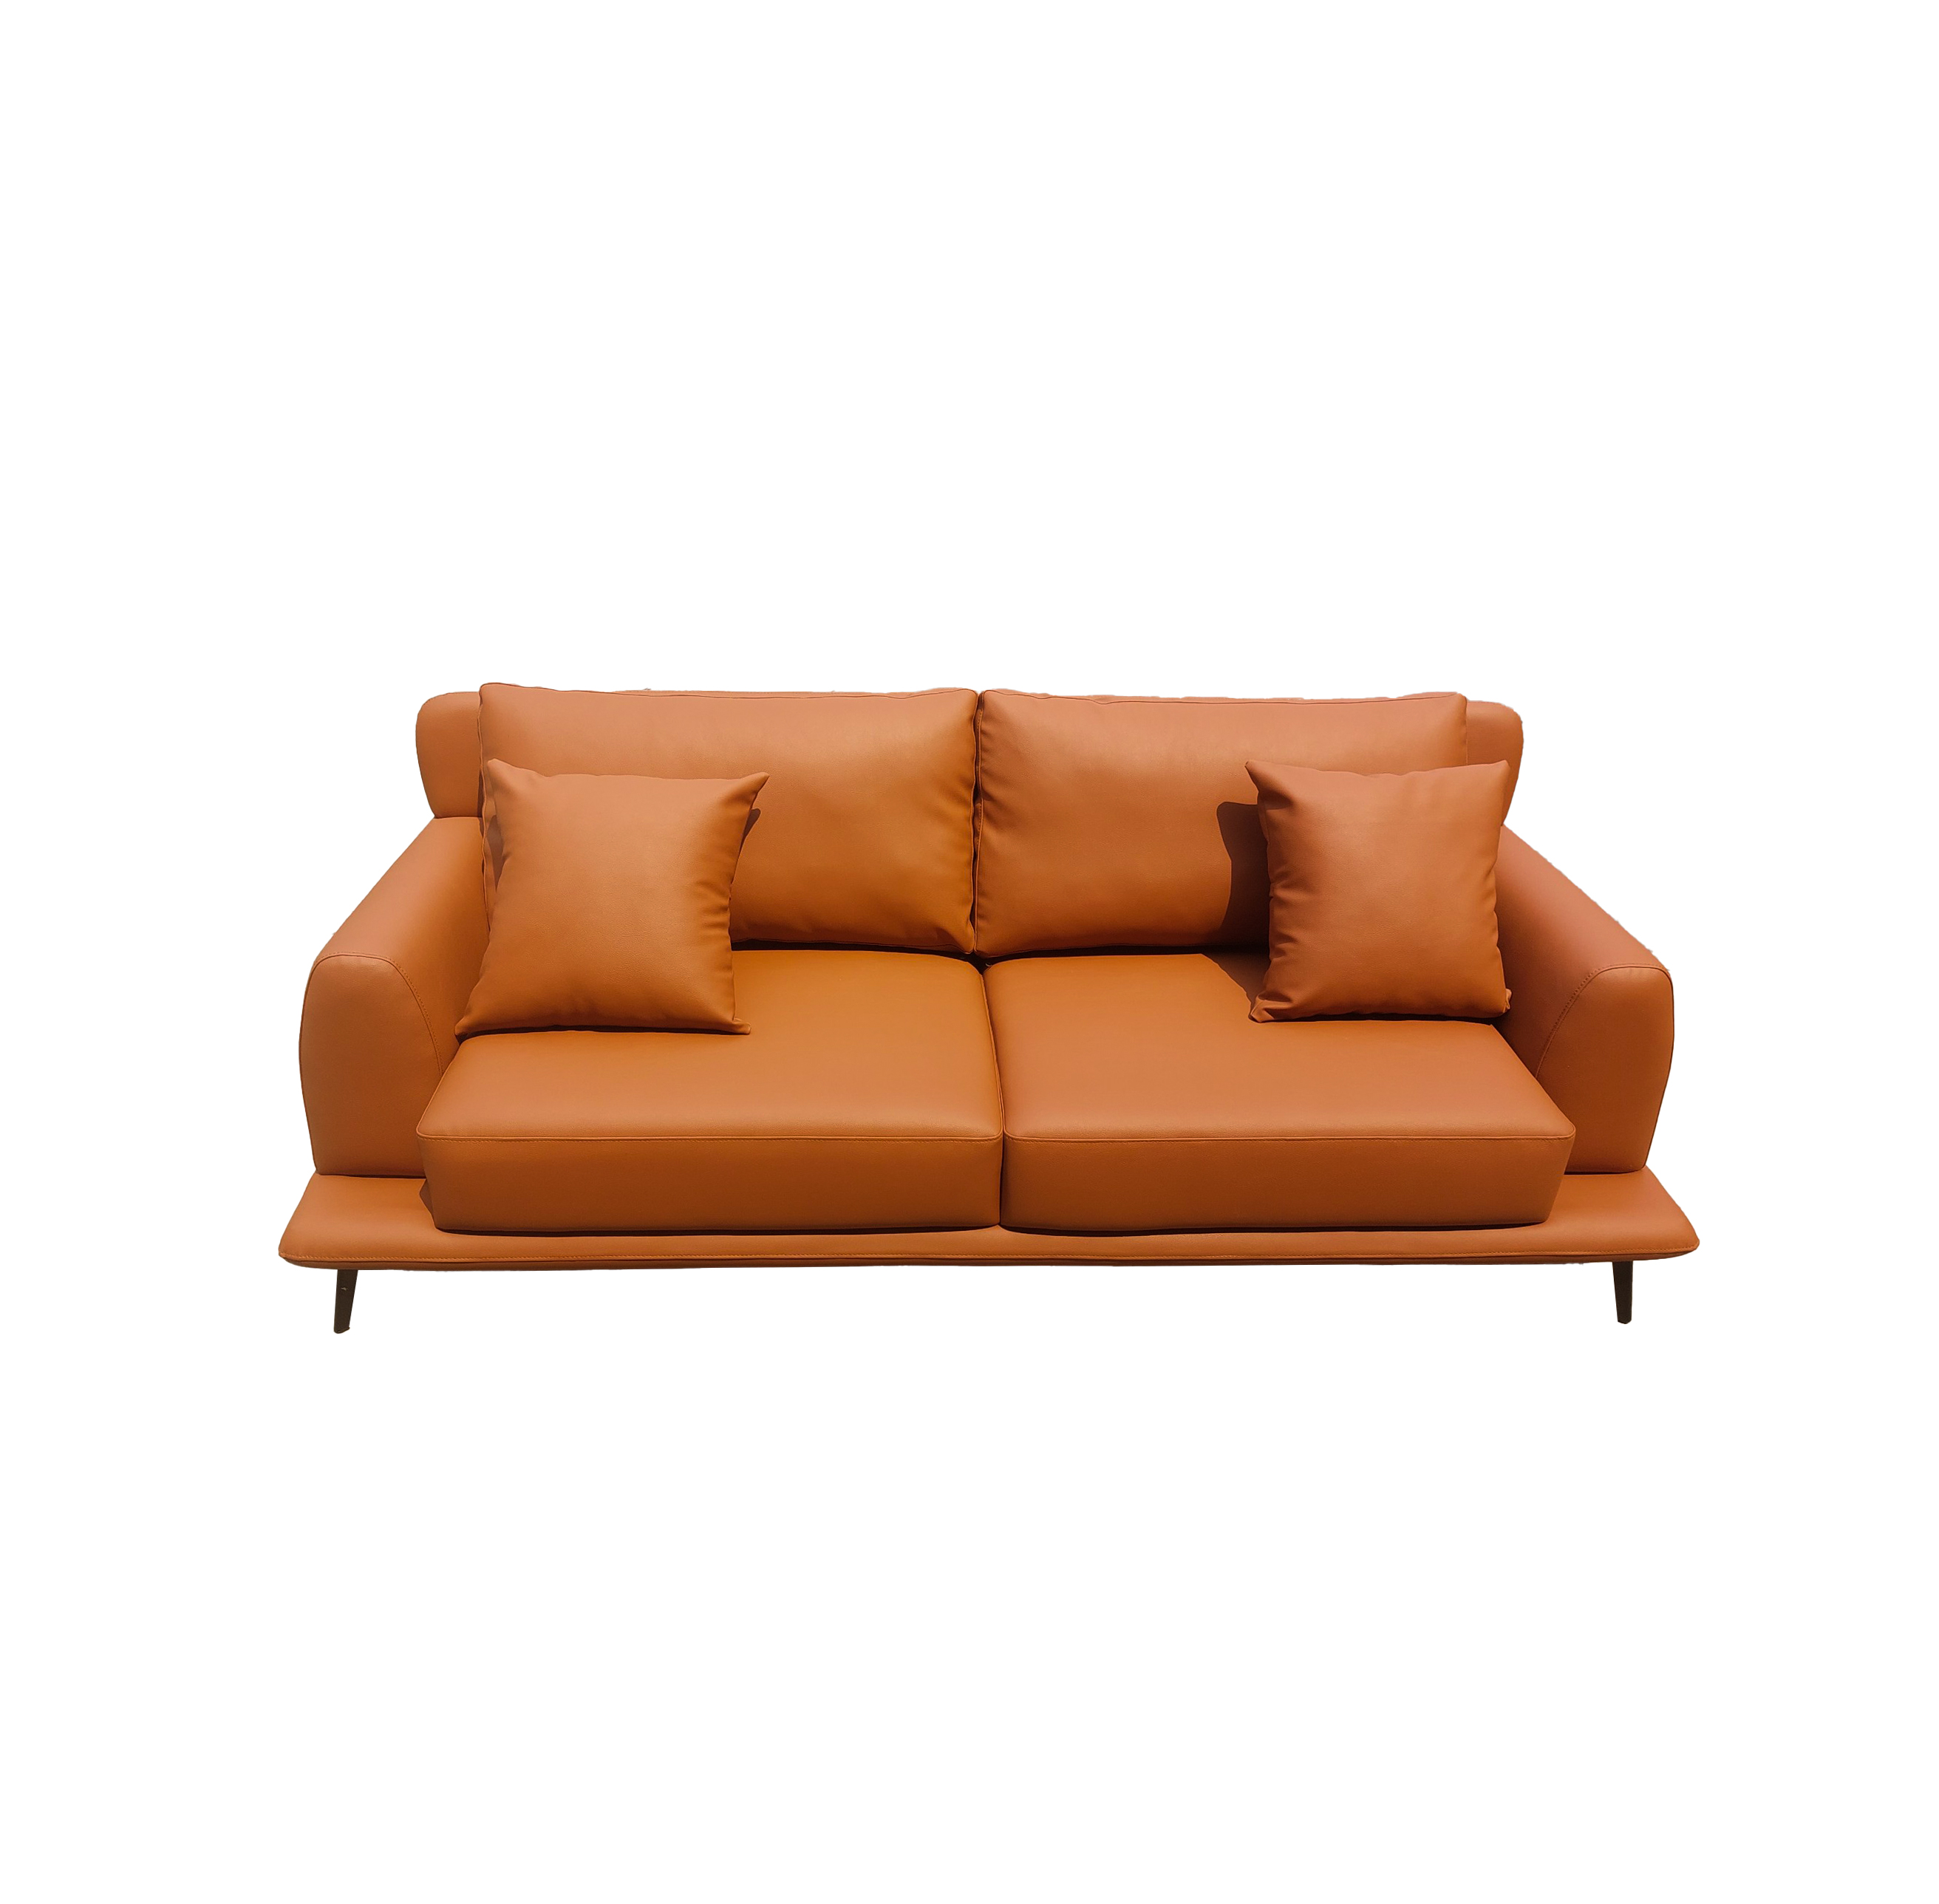 Sofa văng phòng khách hiện đại GD682